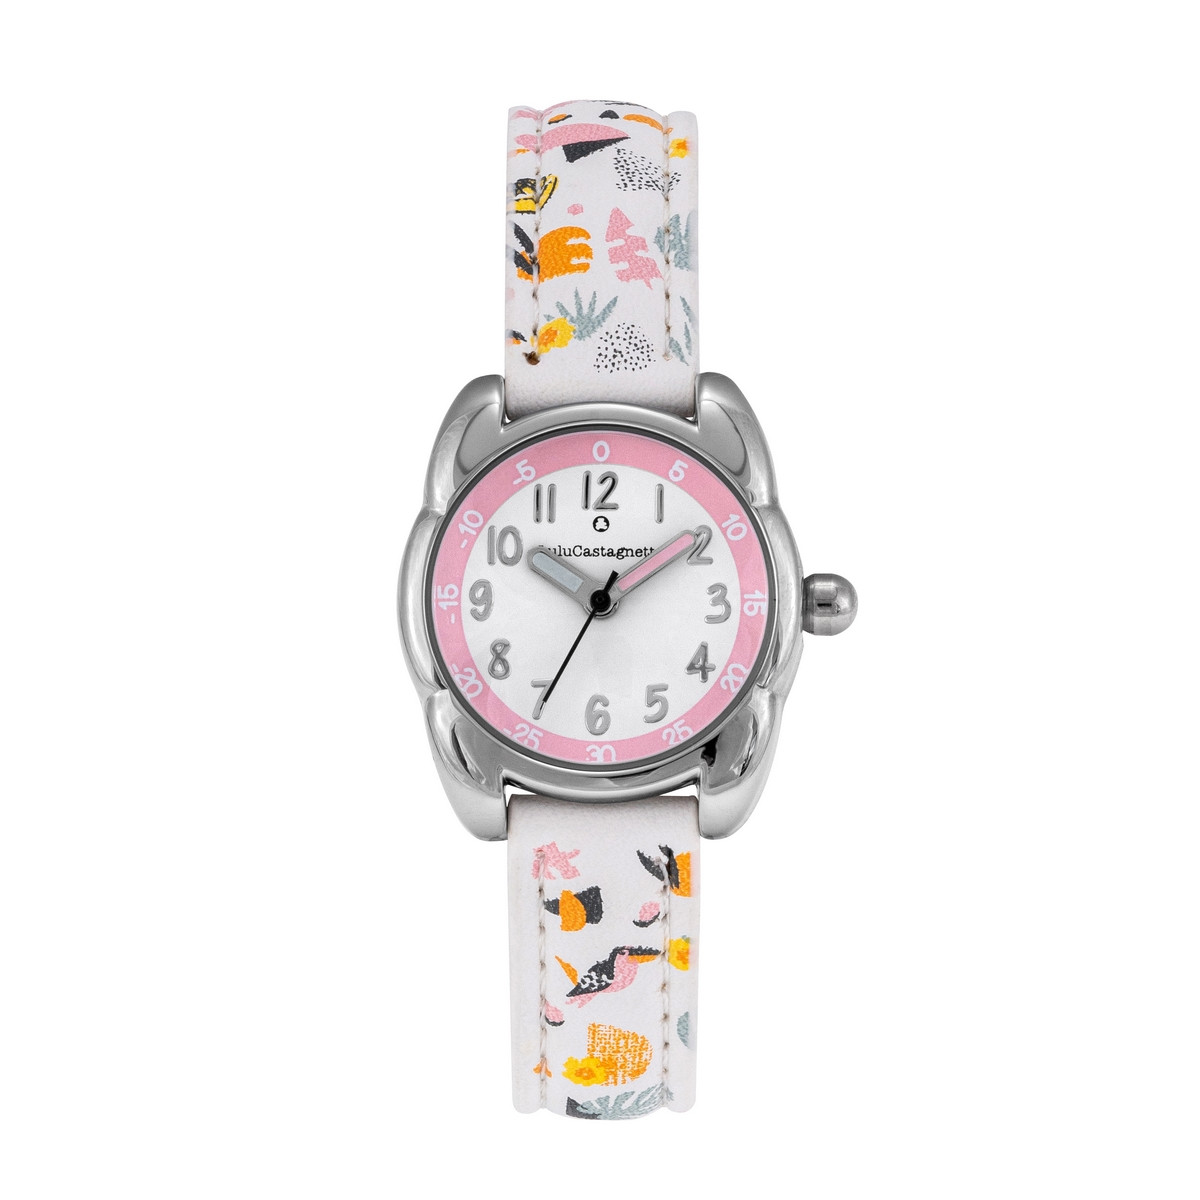 Montre Fille LuluCastagnette - cadran blanc et rose - bracelet blanc avec motifs